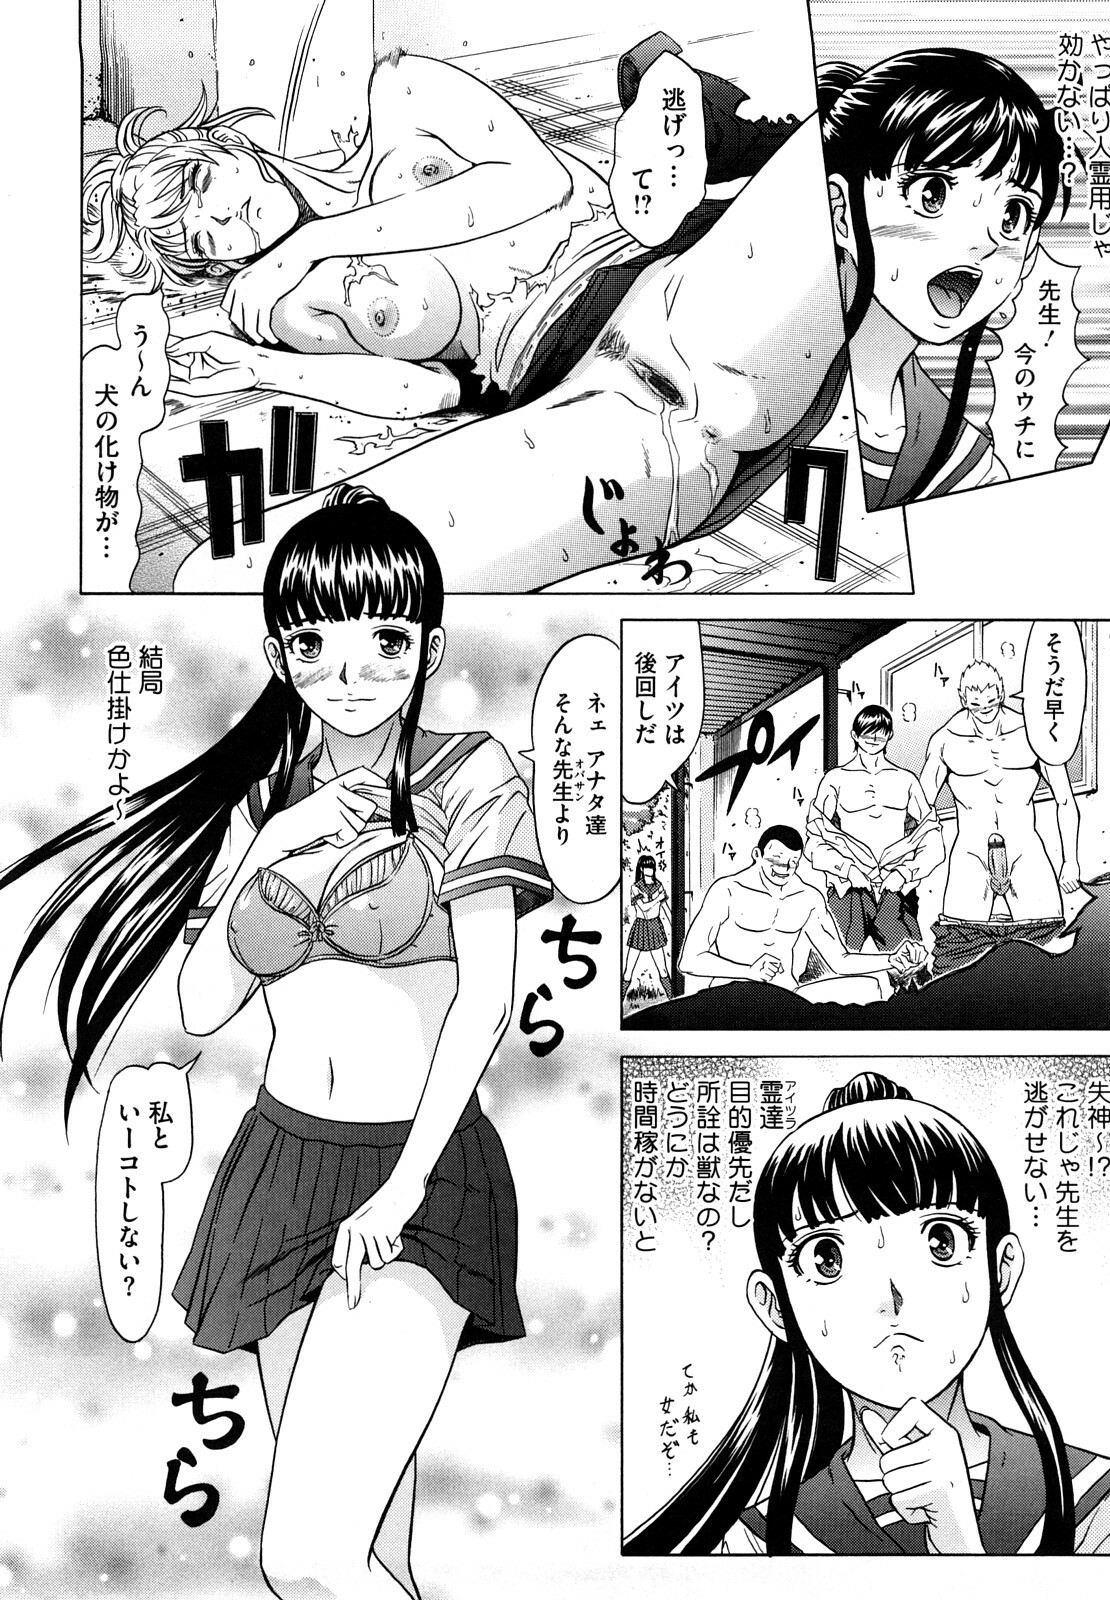 [Kurono Masakado] Nocturnal page 33 full